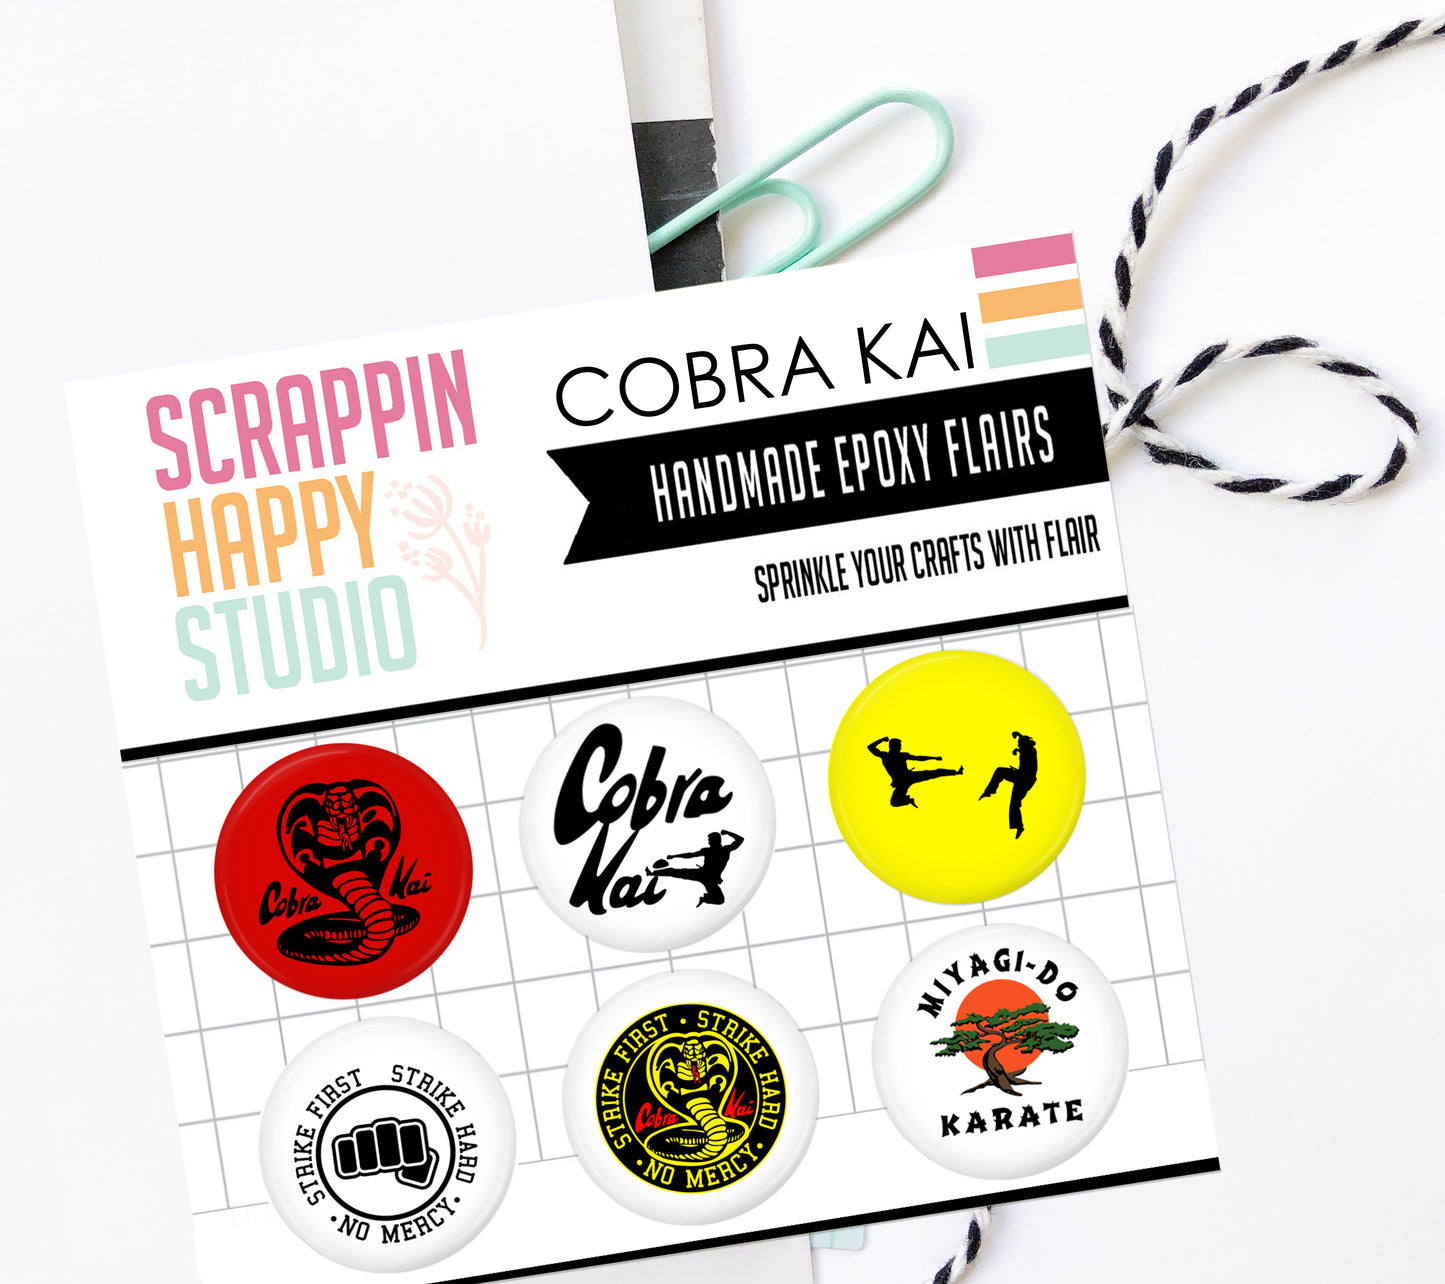 Cobra Kai Epoxy Flair